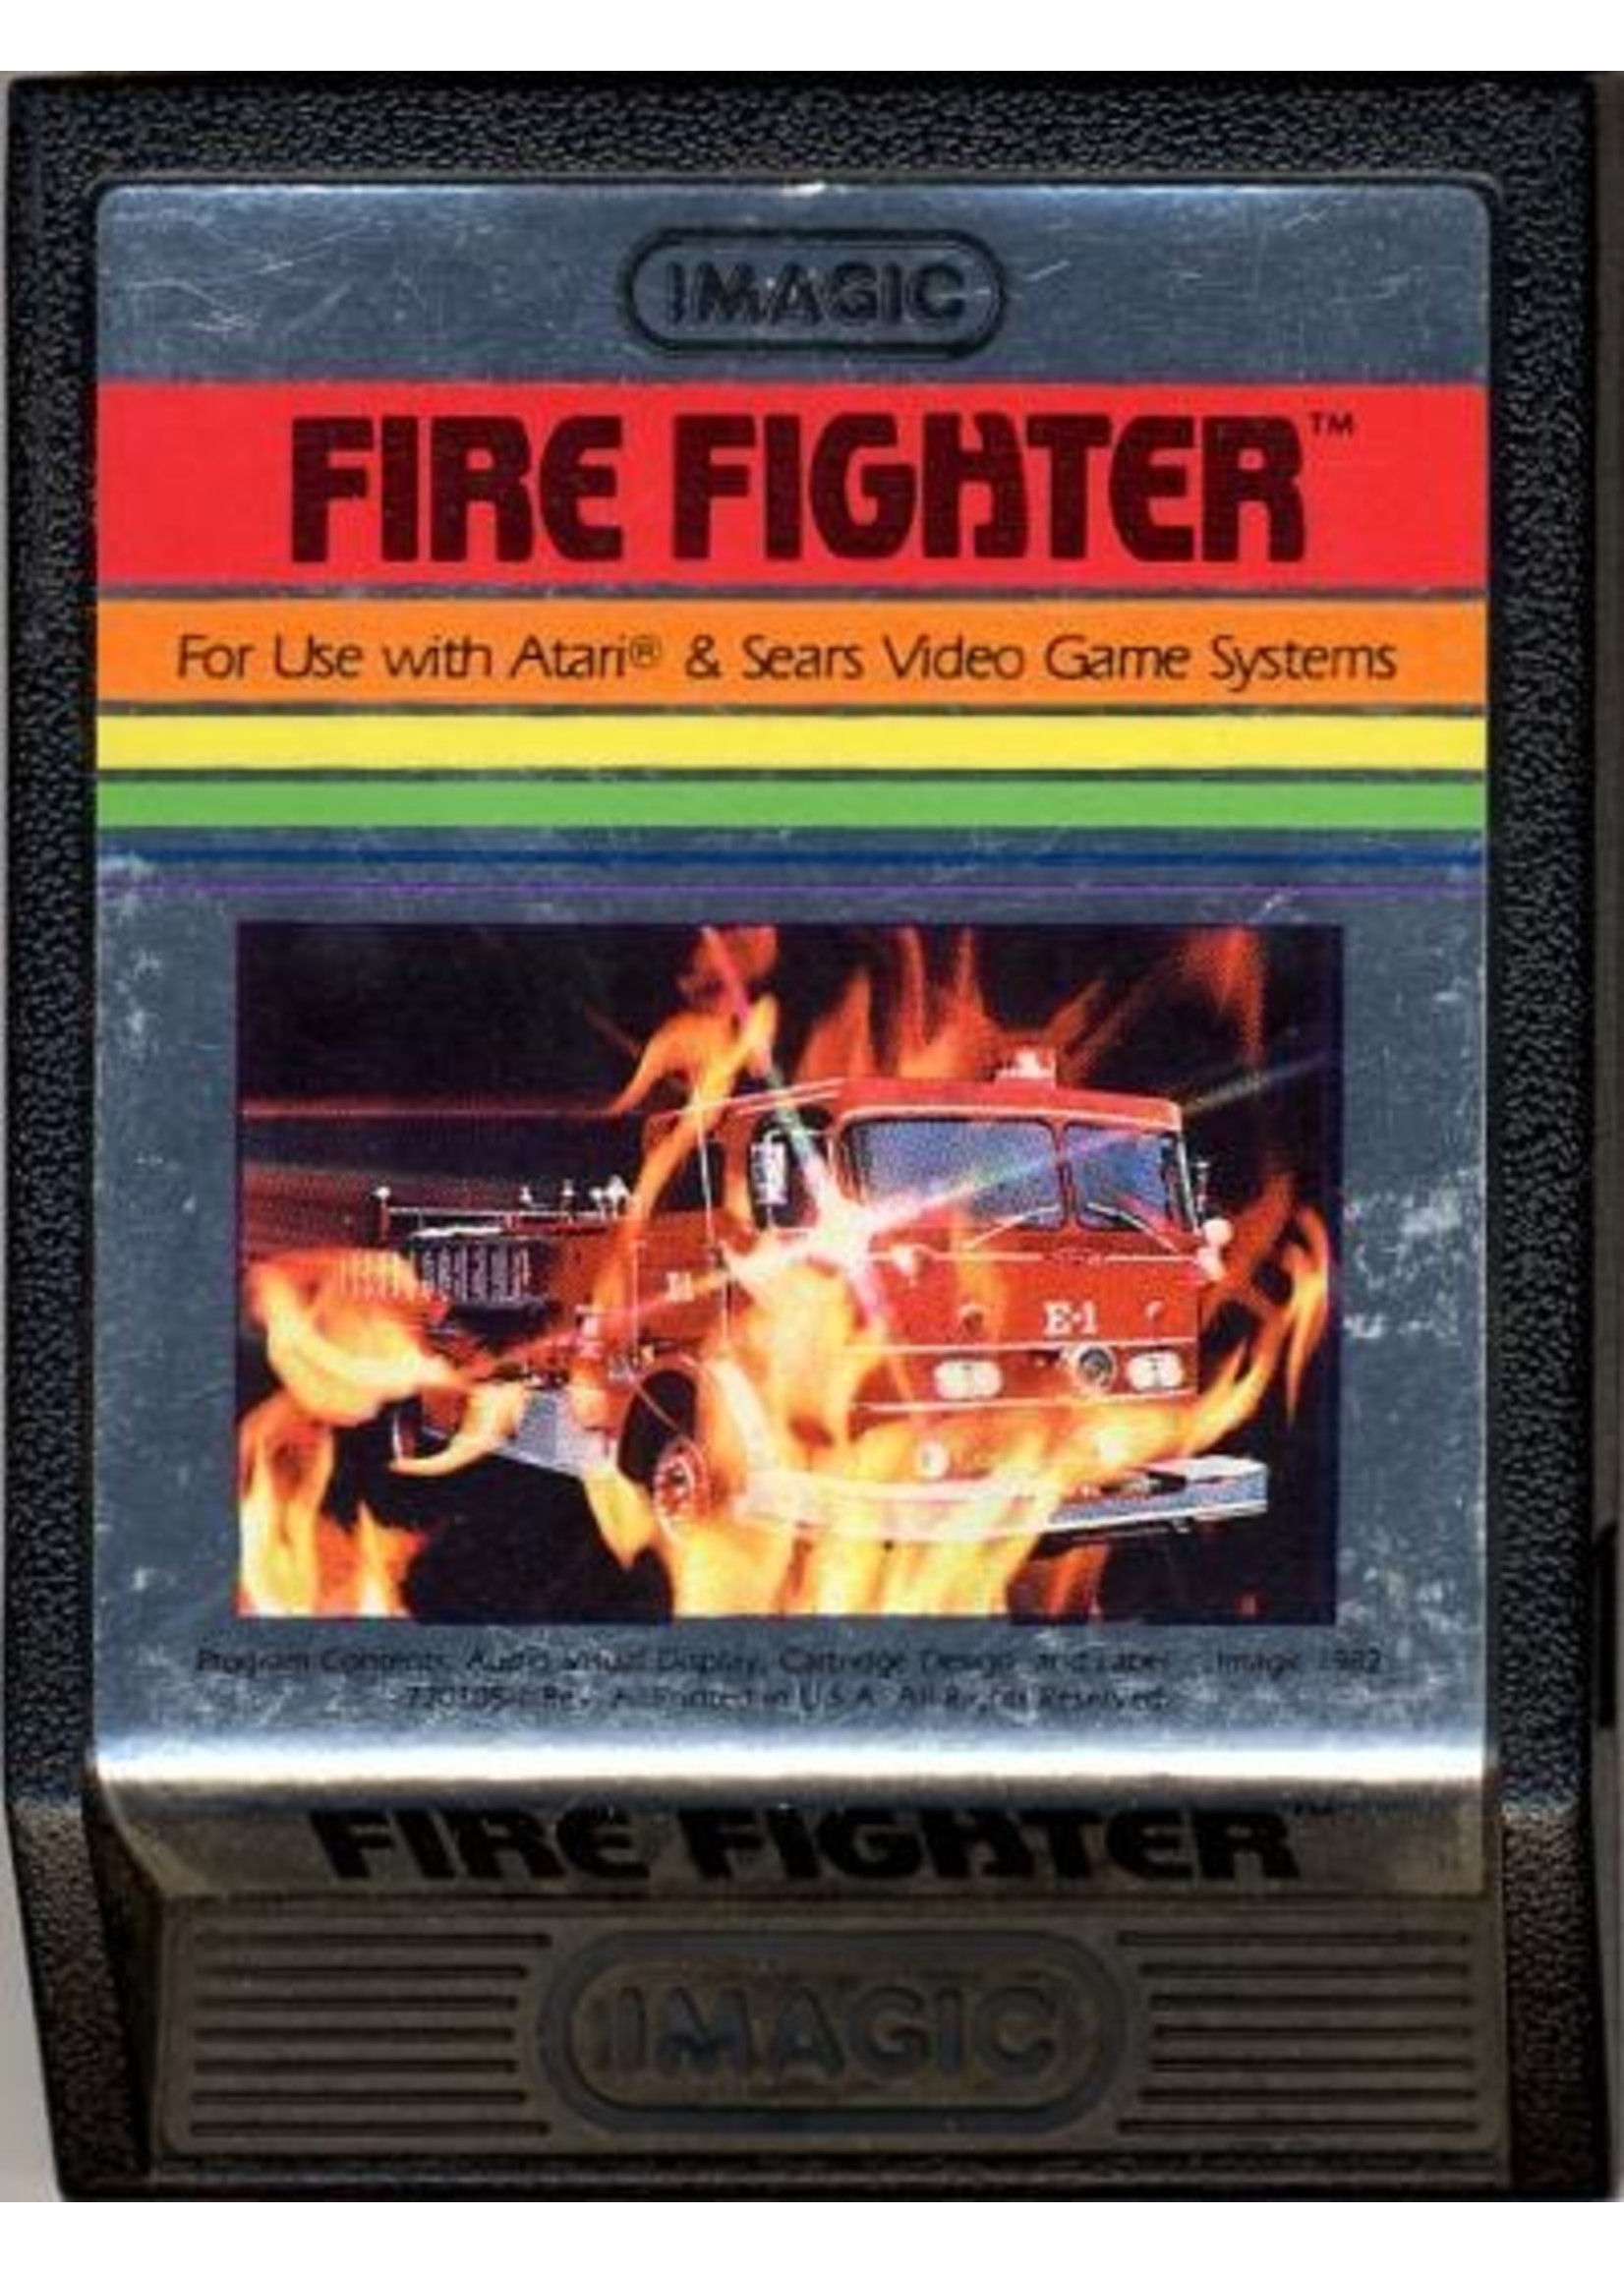 Atari 2600 Fire Fighter